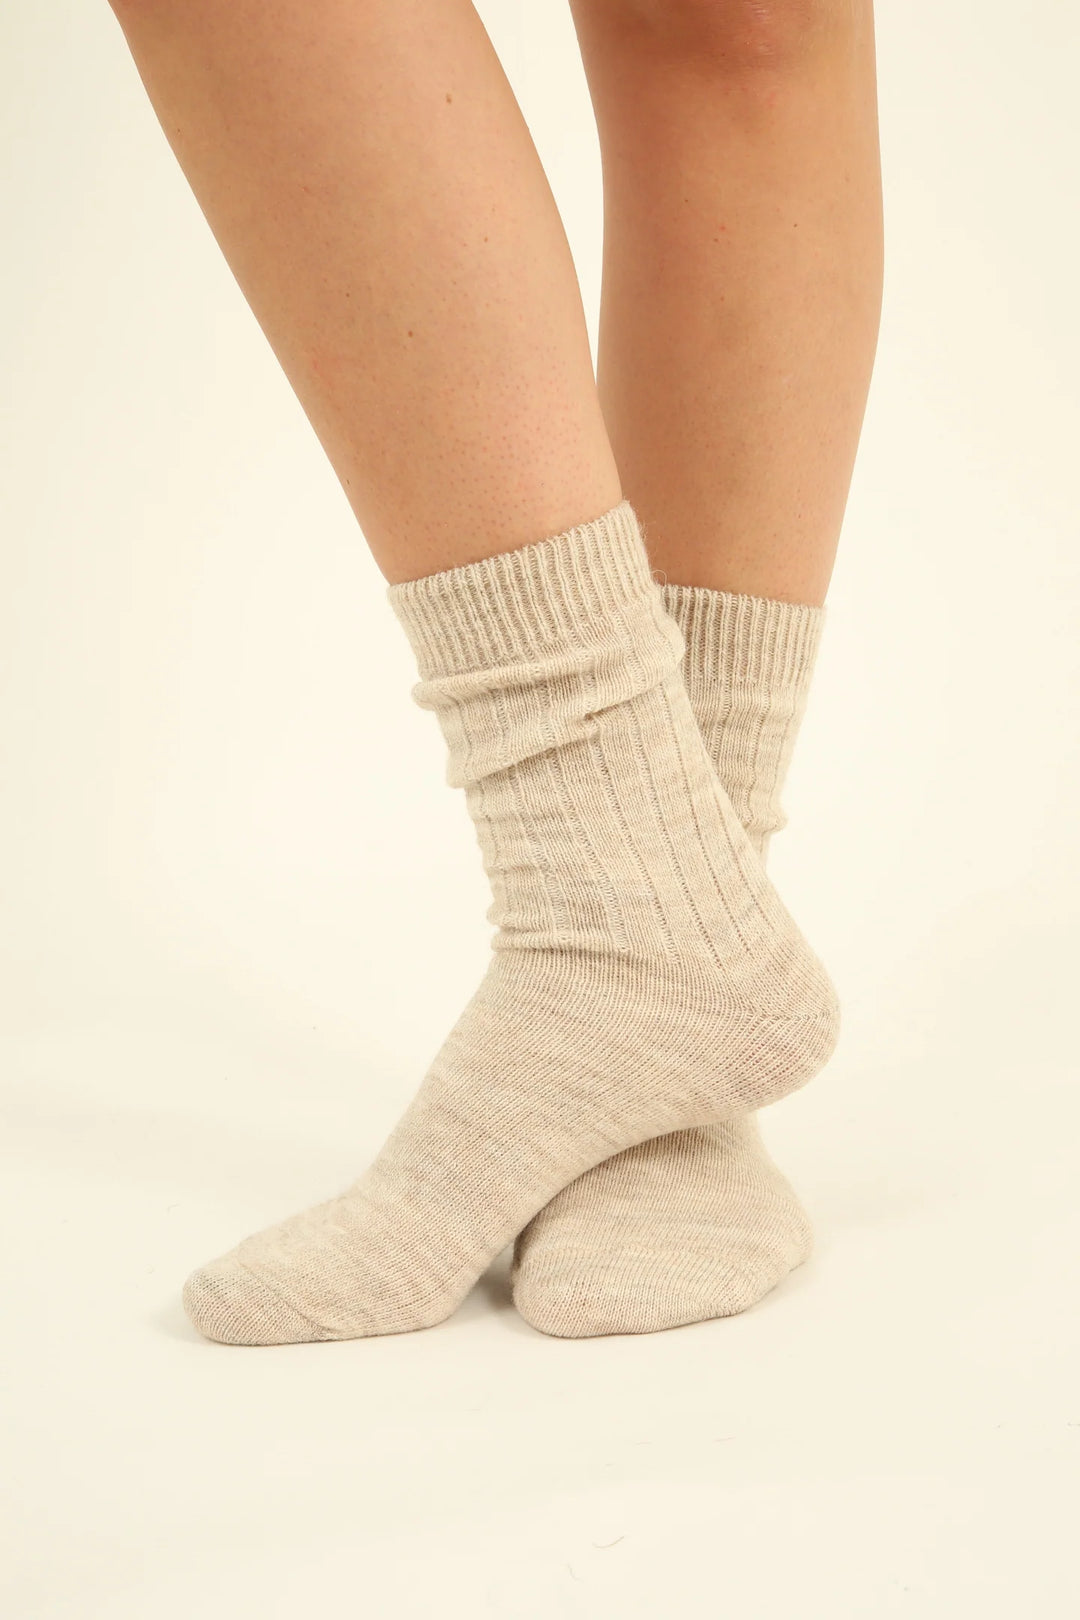 100% Wool Socks - Alpaca and Sheep Wool - 4 pairs